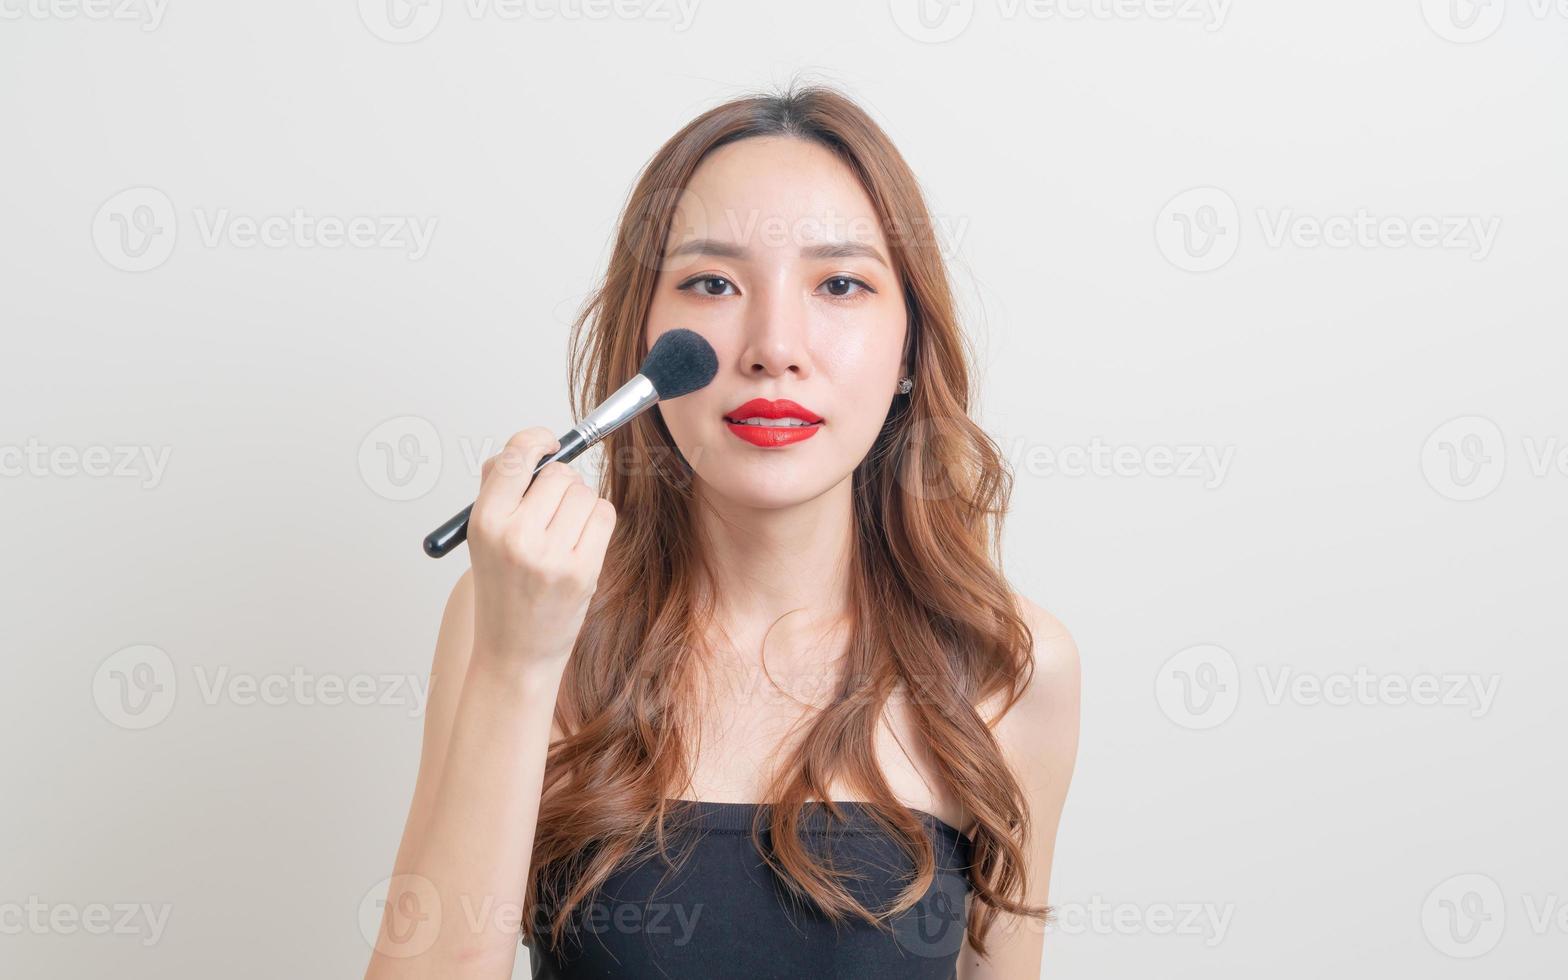 Porträt schöne asiatische Frau mit Make-up-Pinsel auf weißem Hintergrund foto